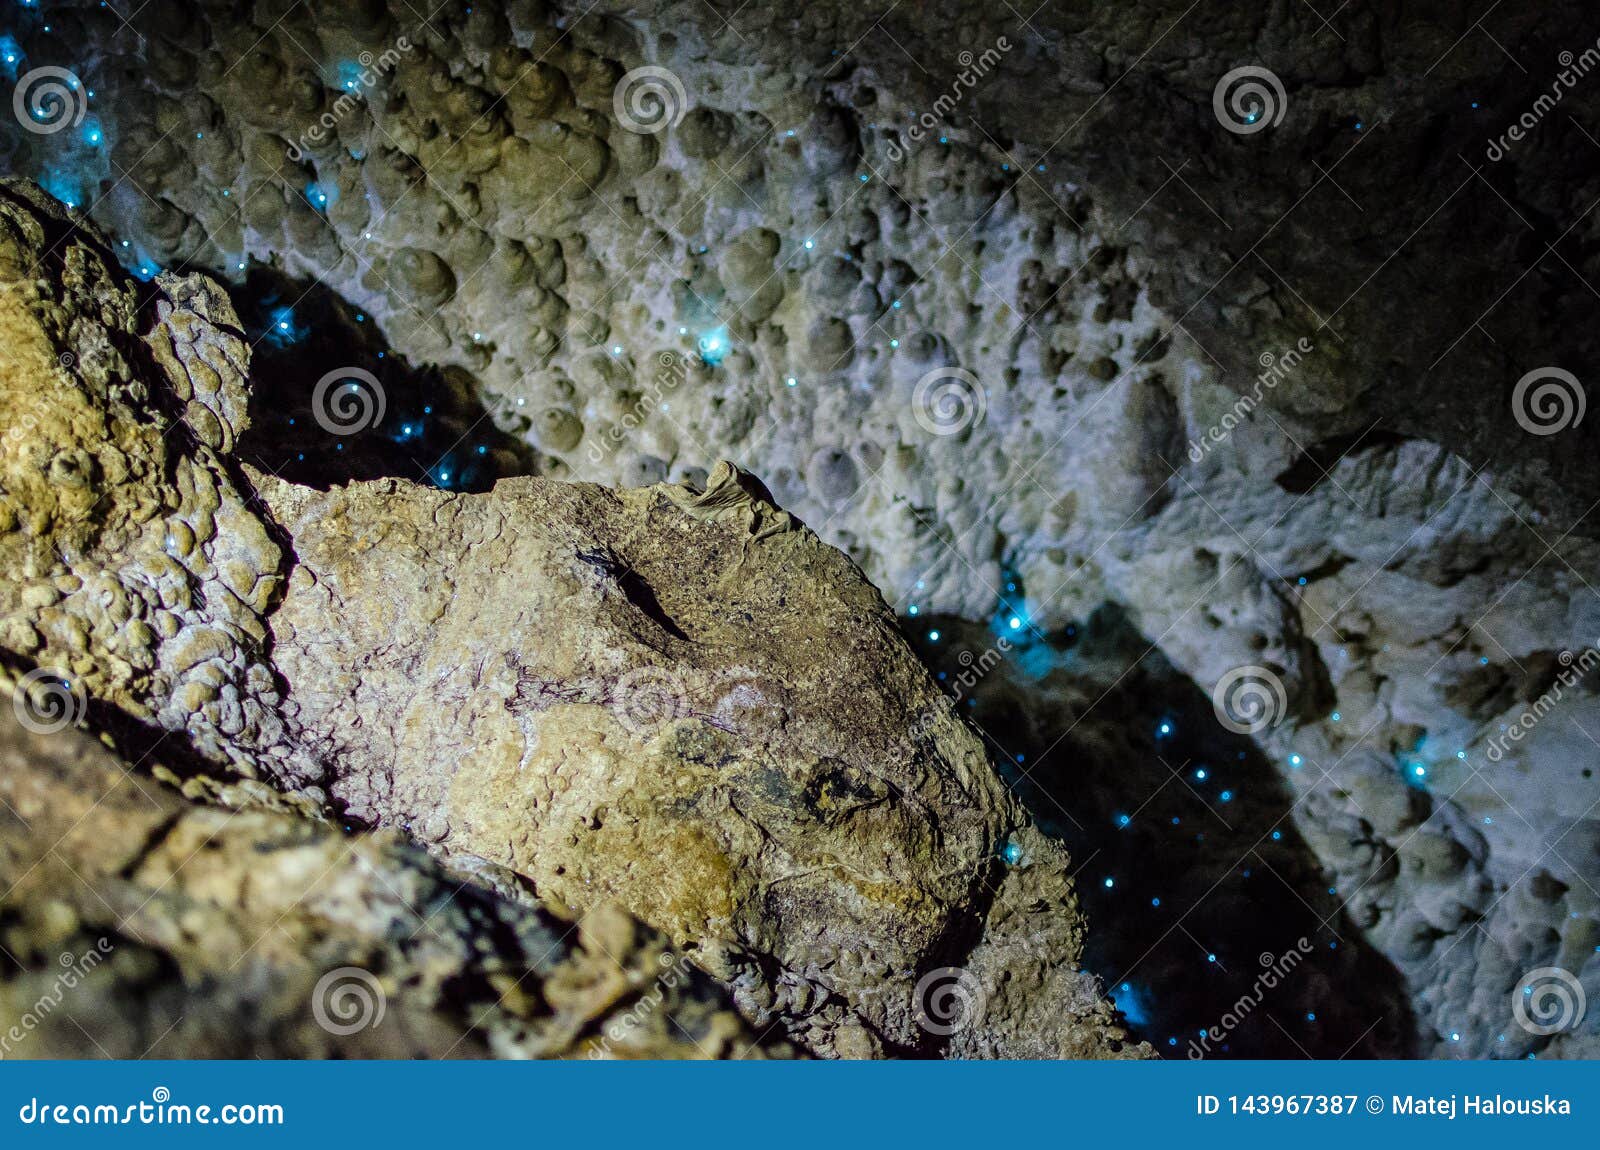 纽西兰北岛北岸外埔石窟中闪光的夜光虫库存图片 图片包括有纽西兰北岛北岸外埔石窟中闪光的夜光虫